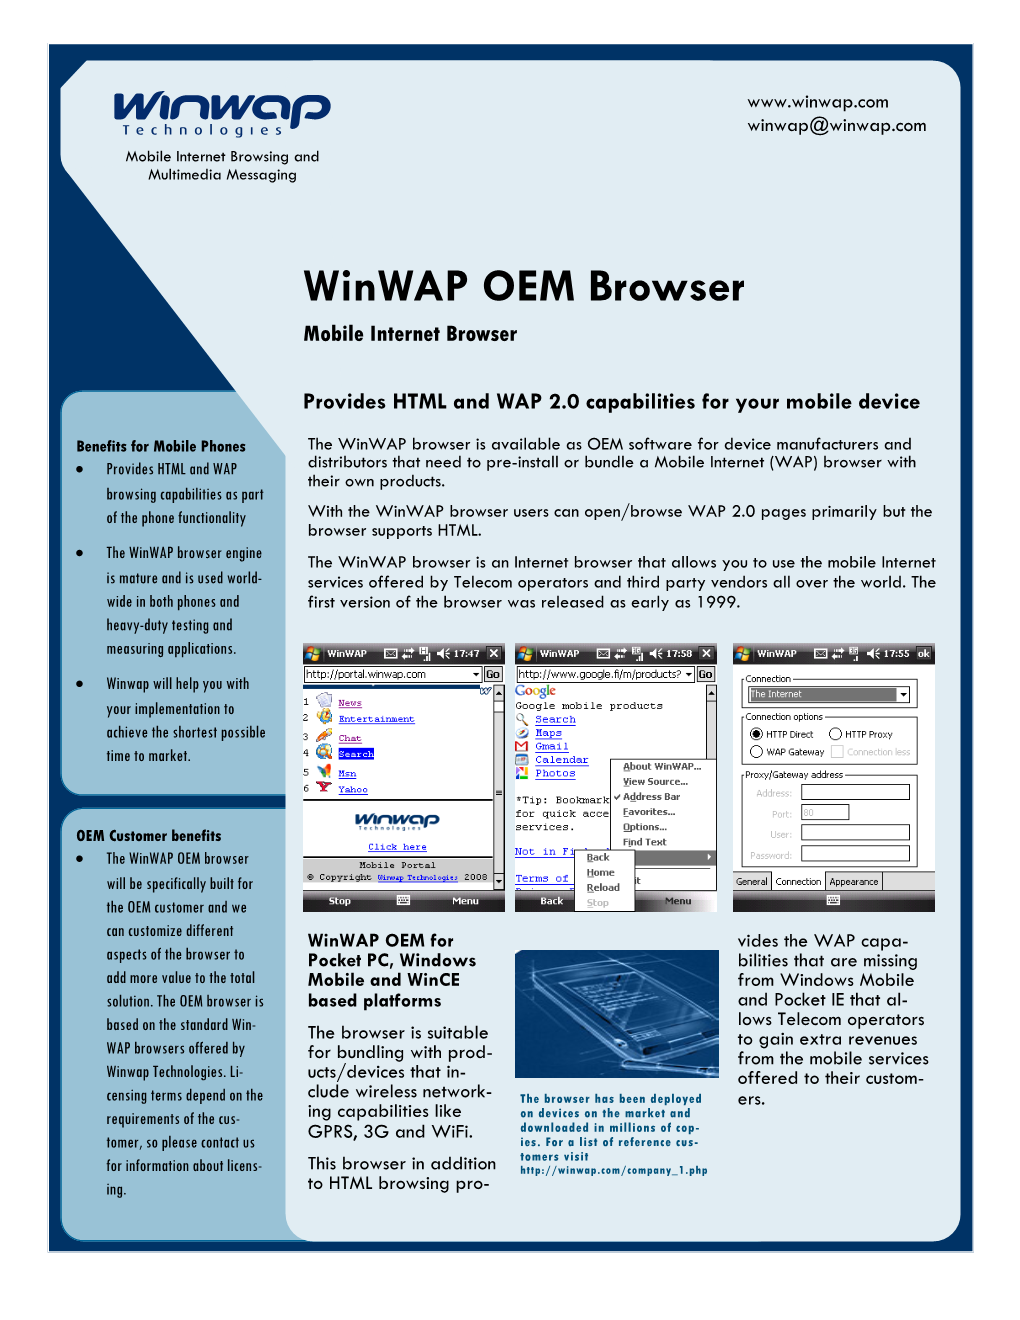 Winwap OEM Browser R6.Pub